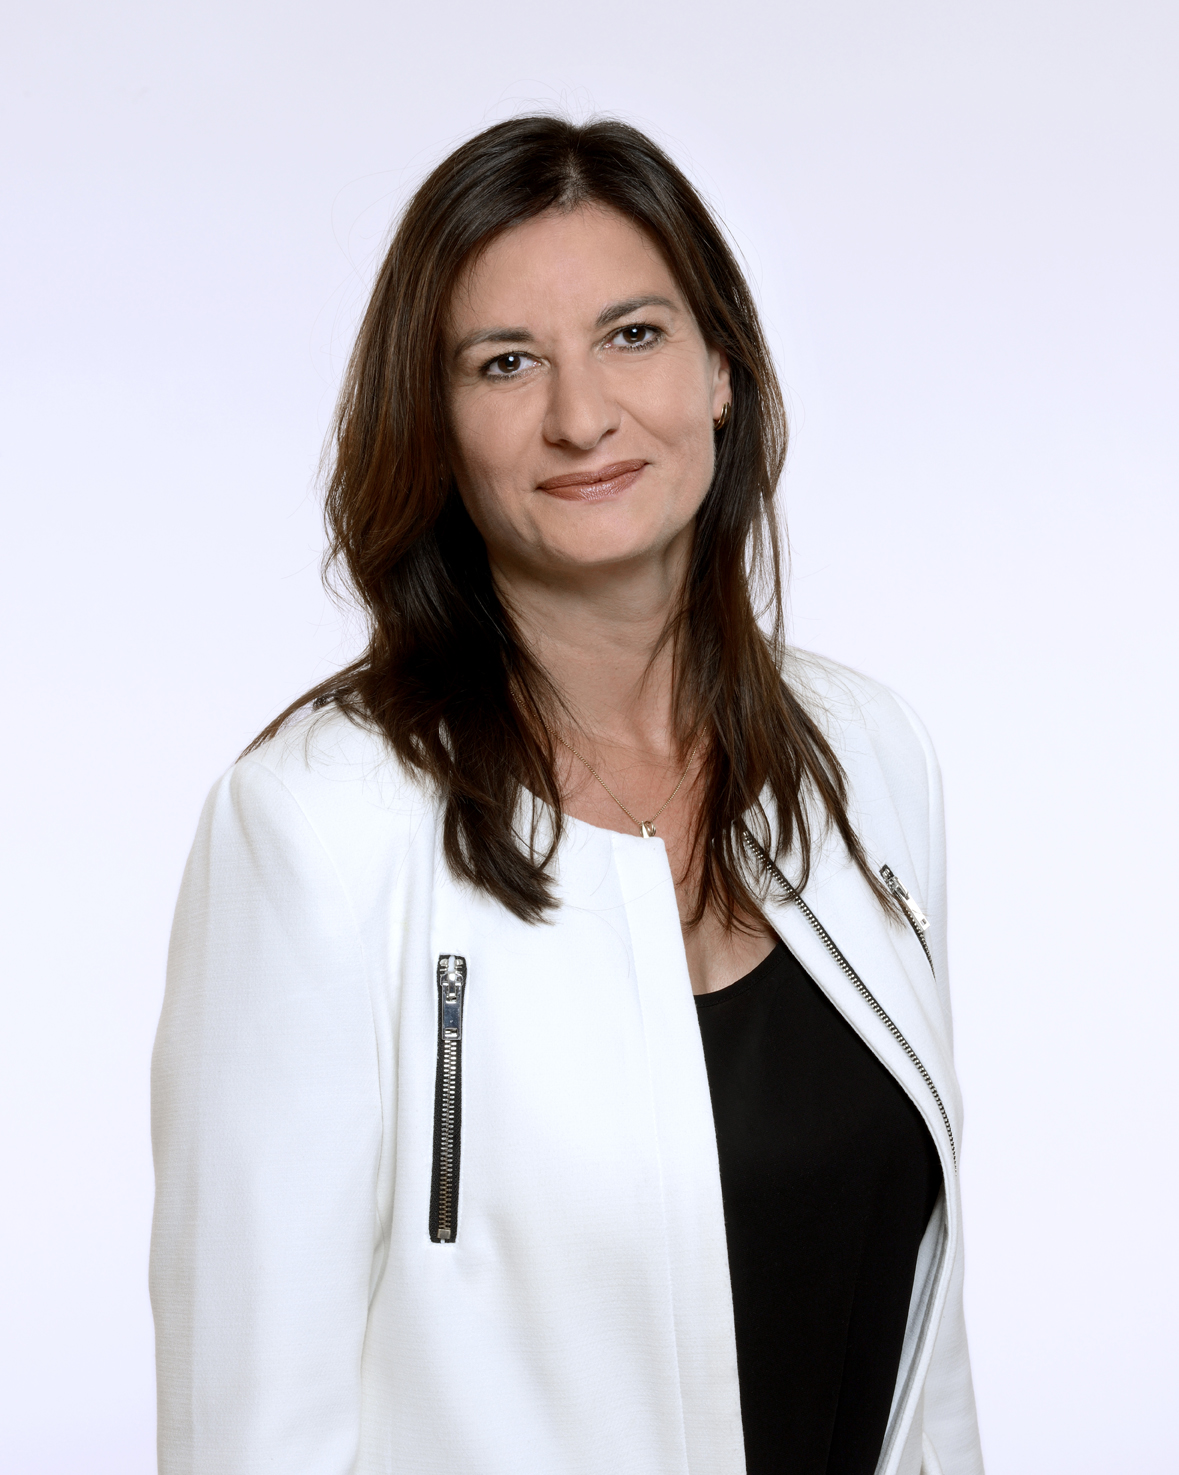 France, Coumières, juillet 2015, portrait de Françoise Coutant, tête de liste EELV en Charente et tête de liste régionale pour les Régionales 2015